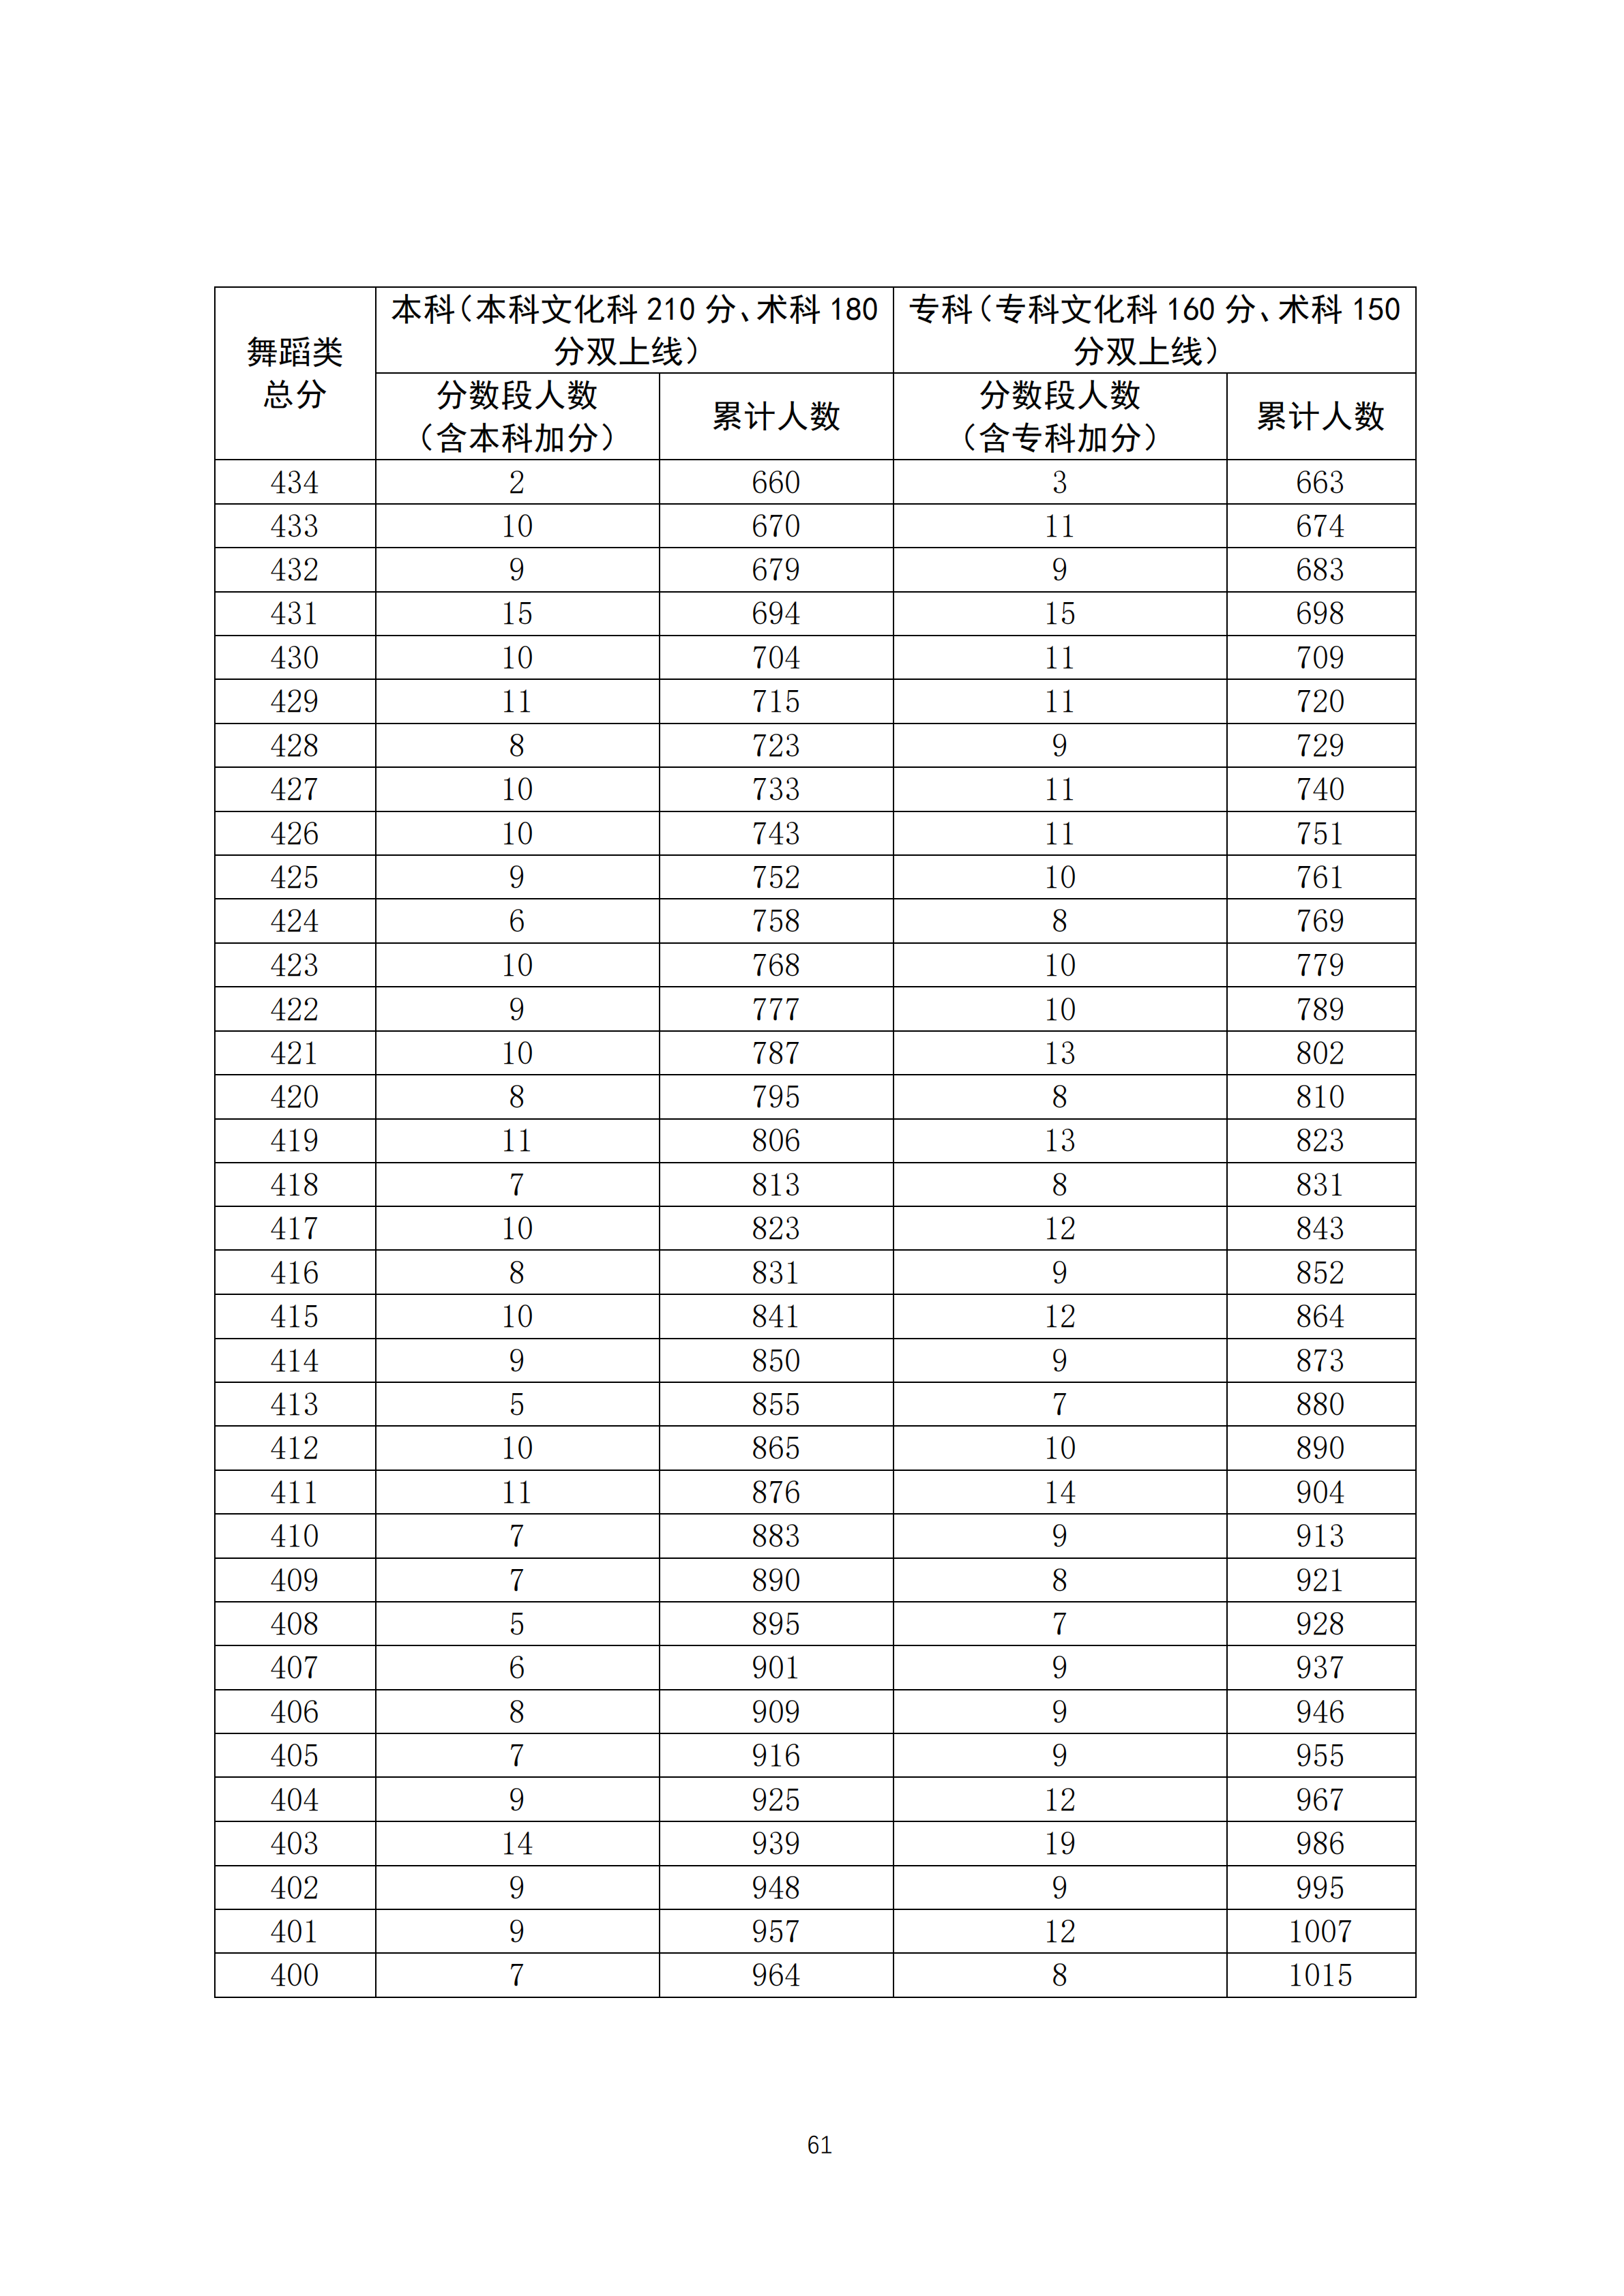 2020广东高考舞蹈类成绩排名